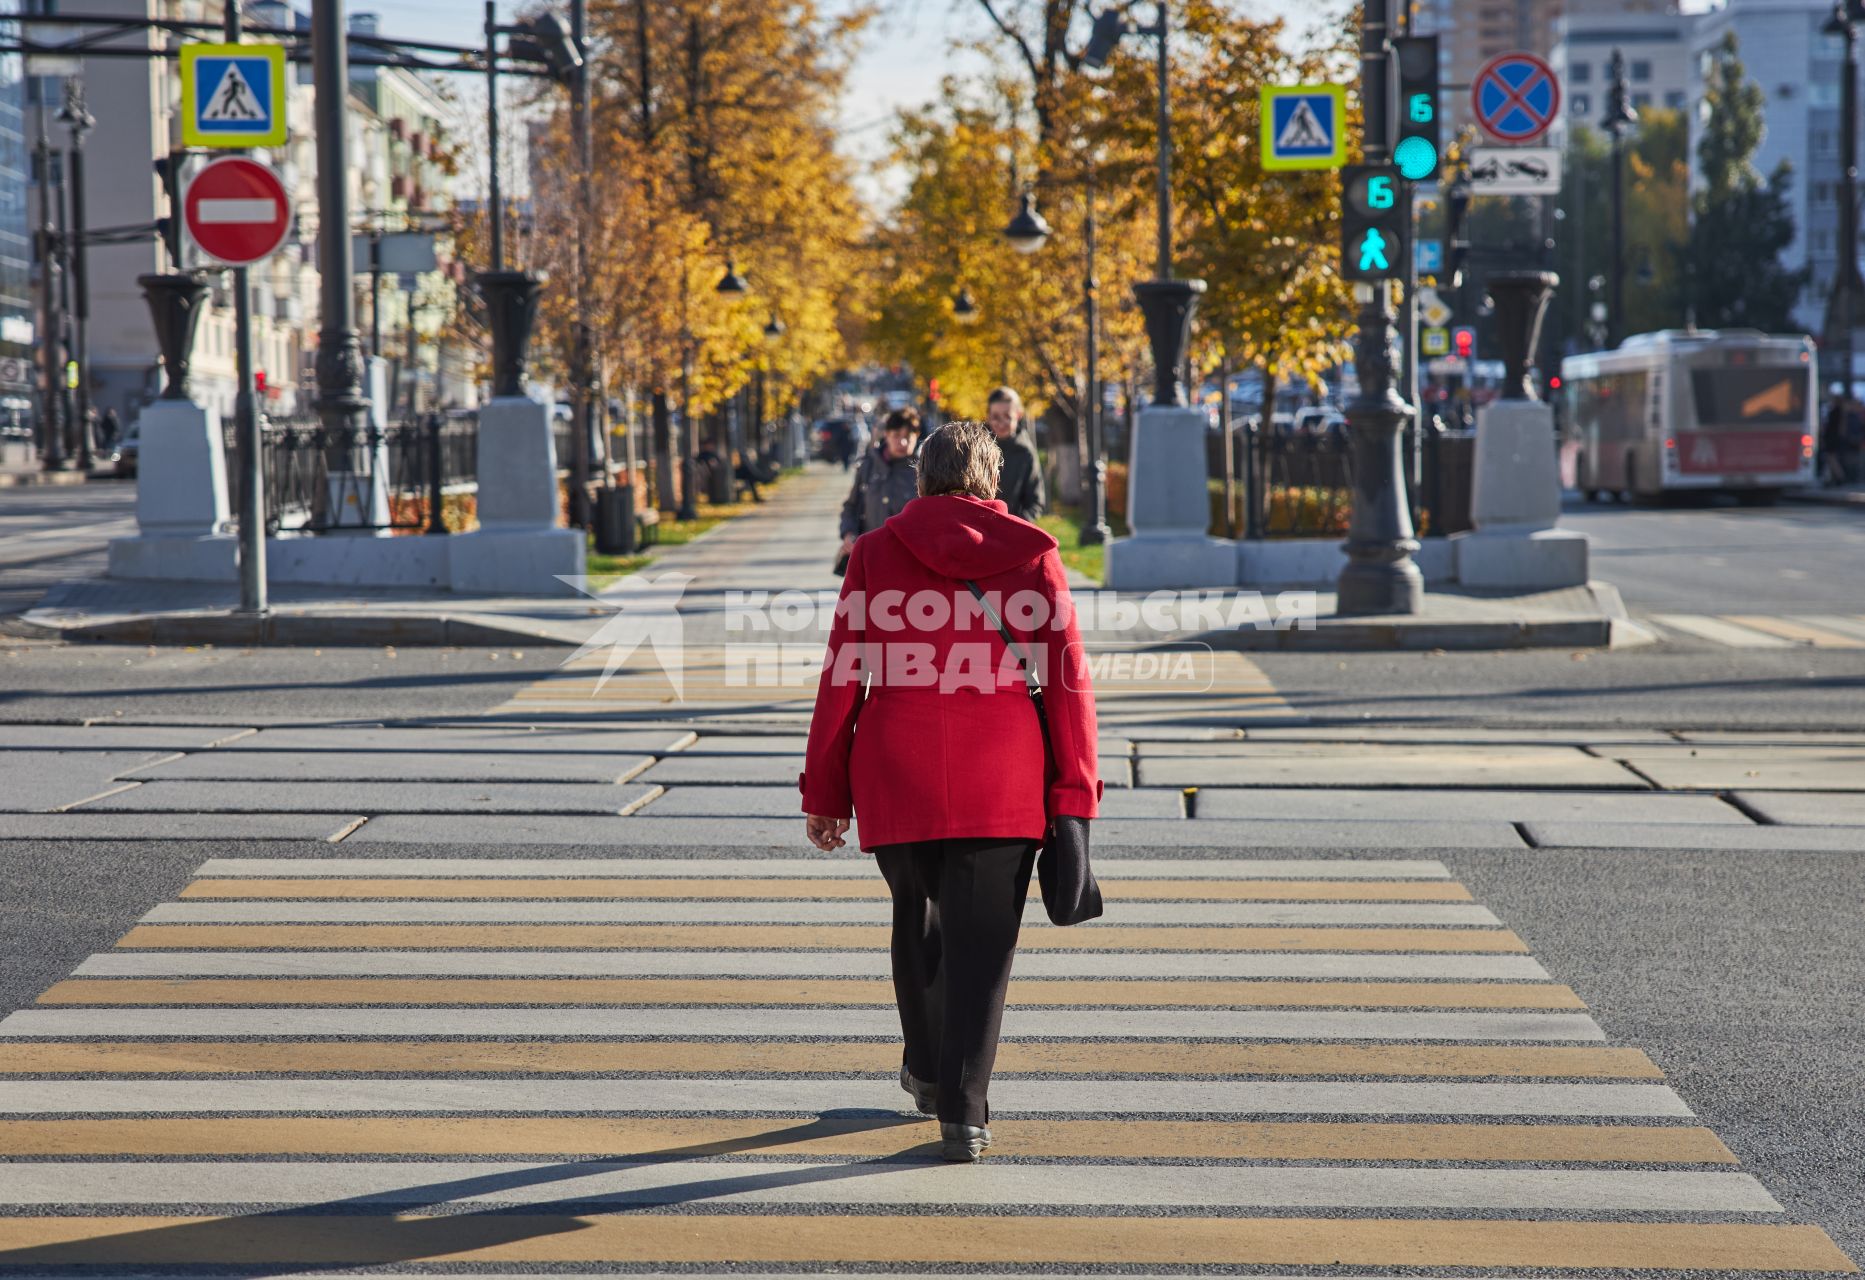 Пермь. Женщина переходит дорогу по пешеходному переходу.